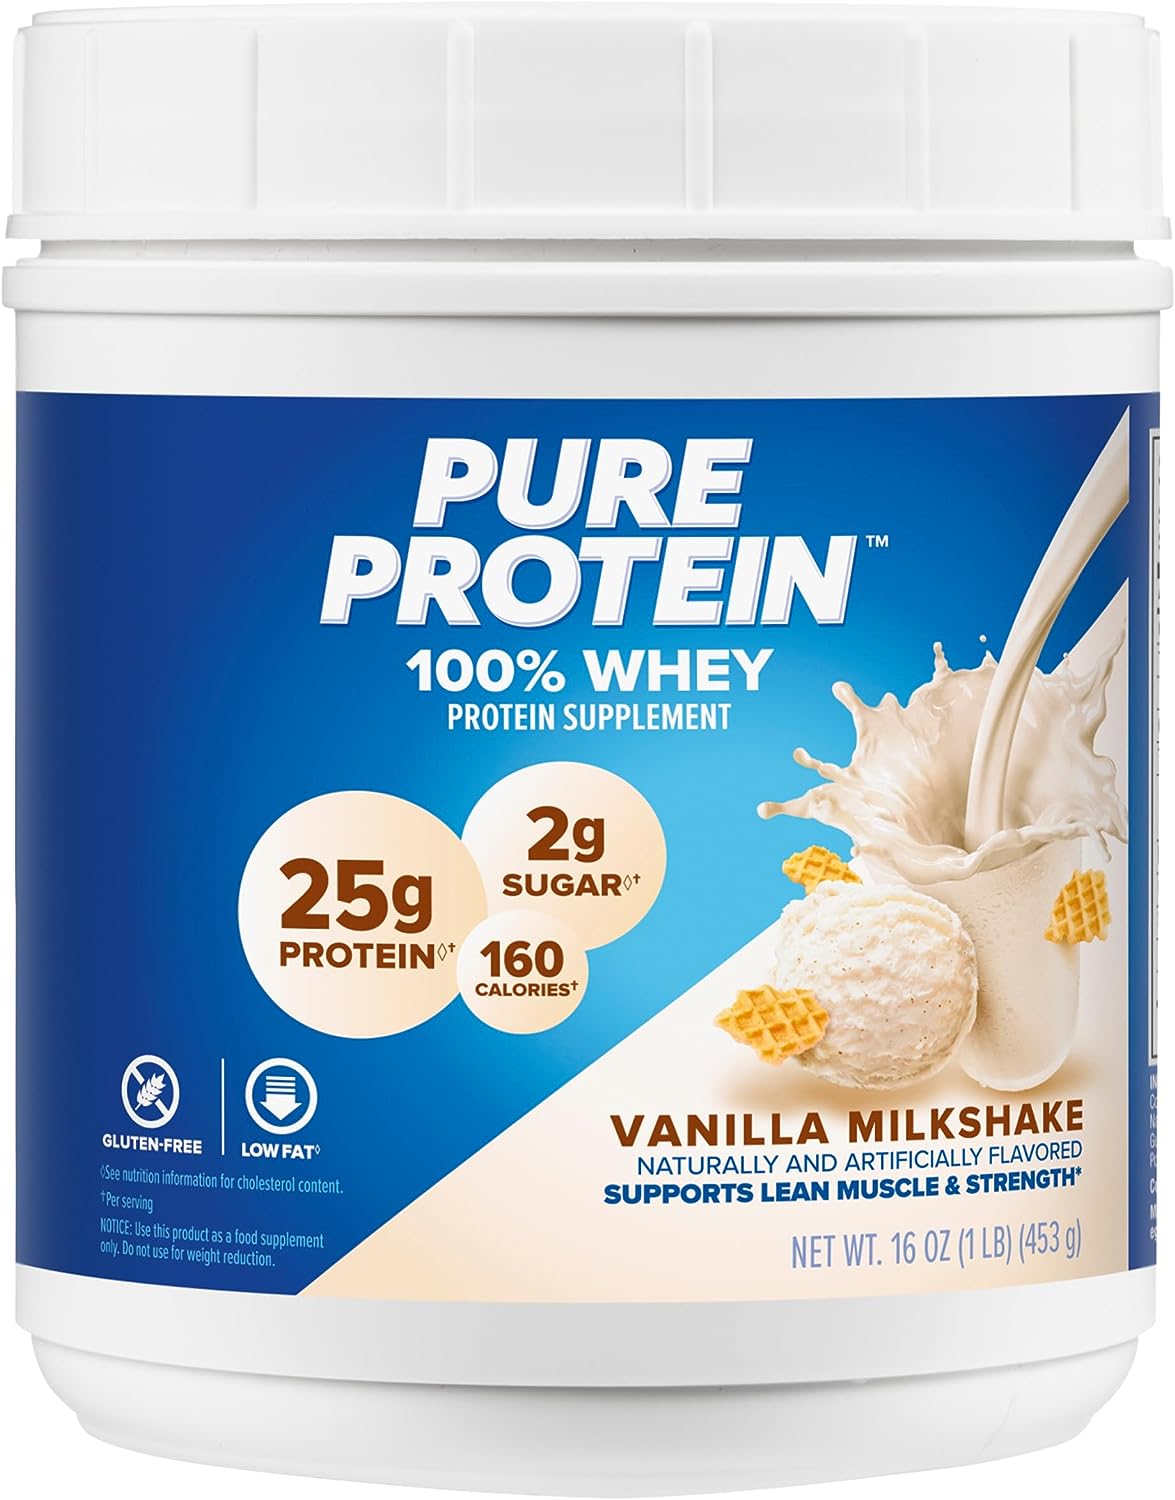 Pure Protein Powder, Whey, High Protein, Low Sugar, Gluten Free, Vanil